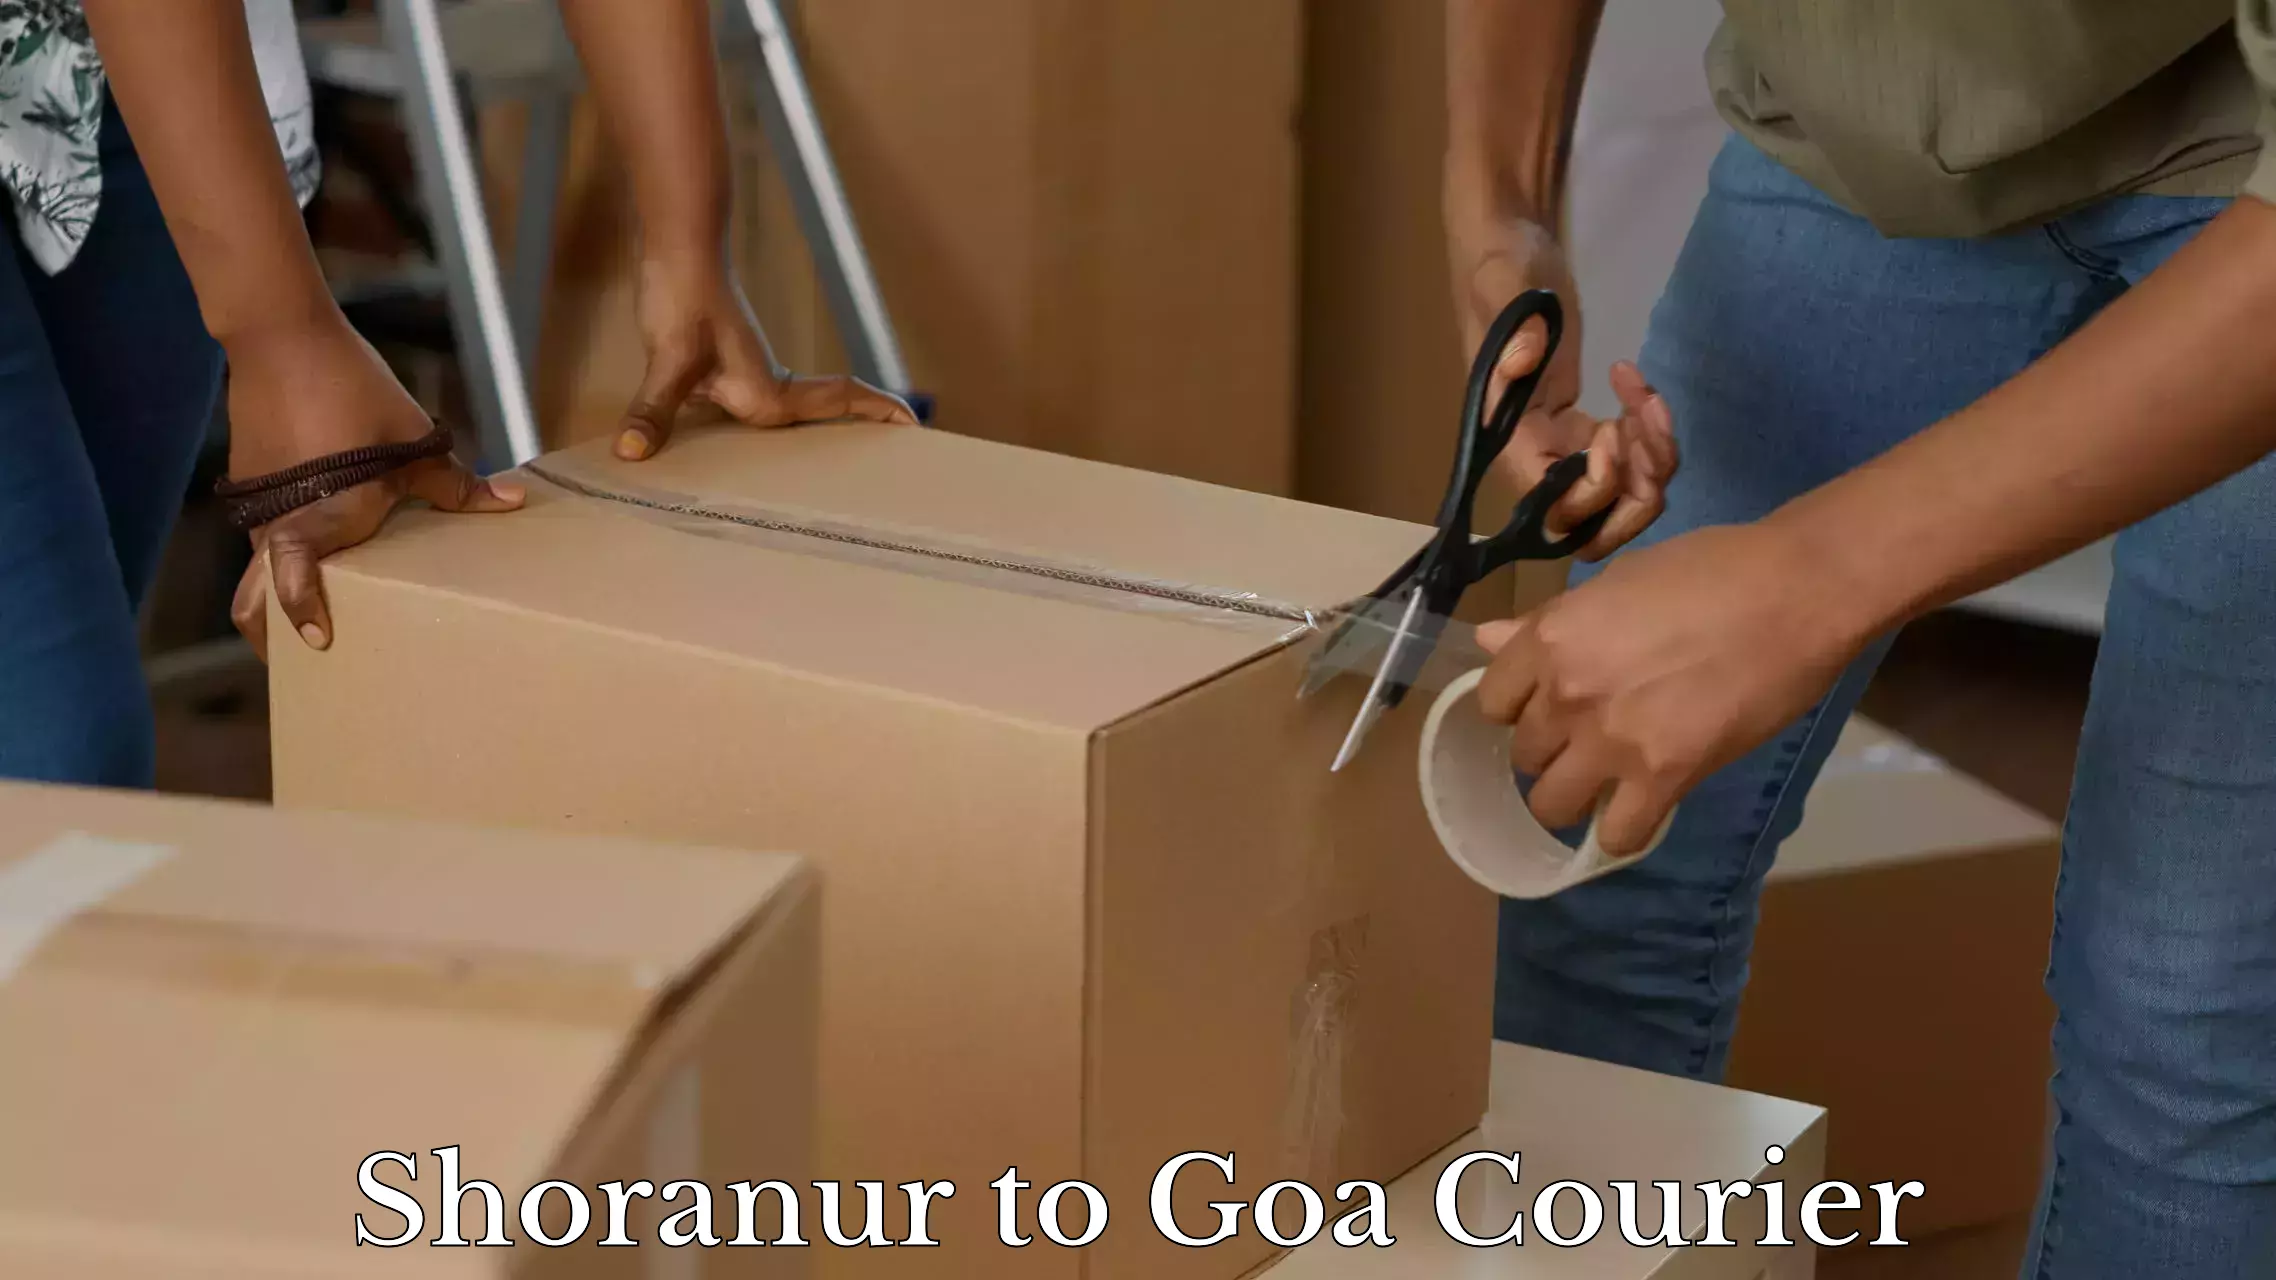 Luggage shipment tracking Shoranur to Goa University